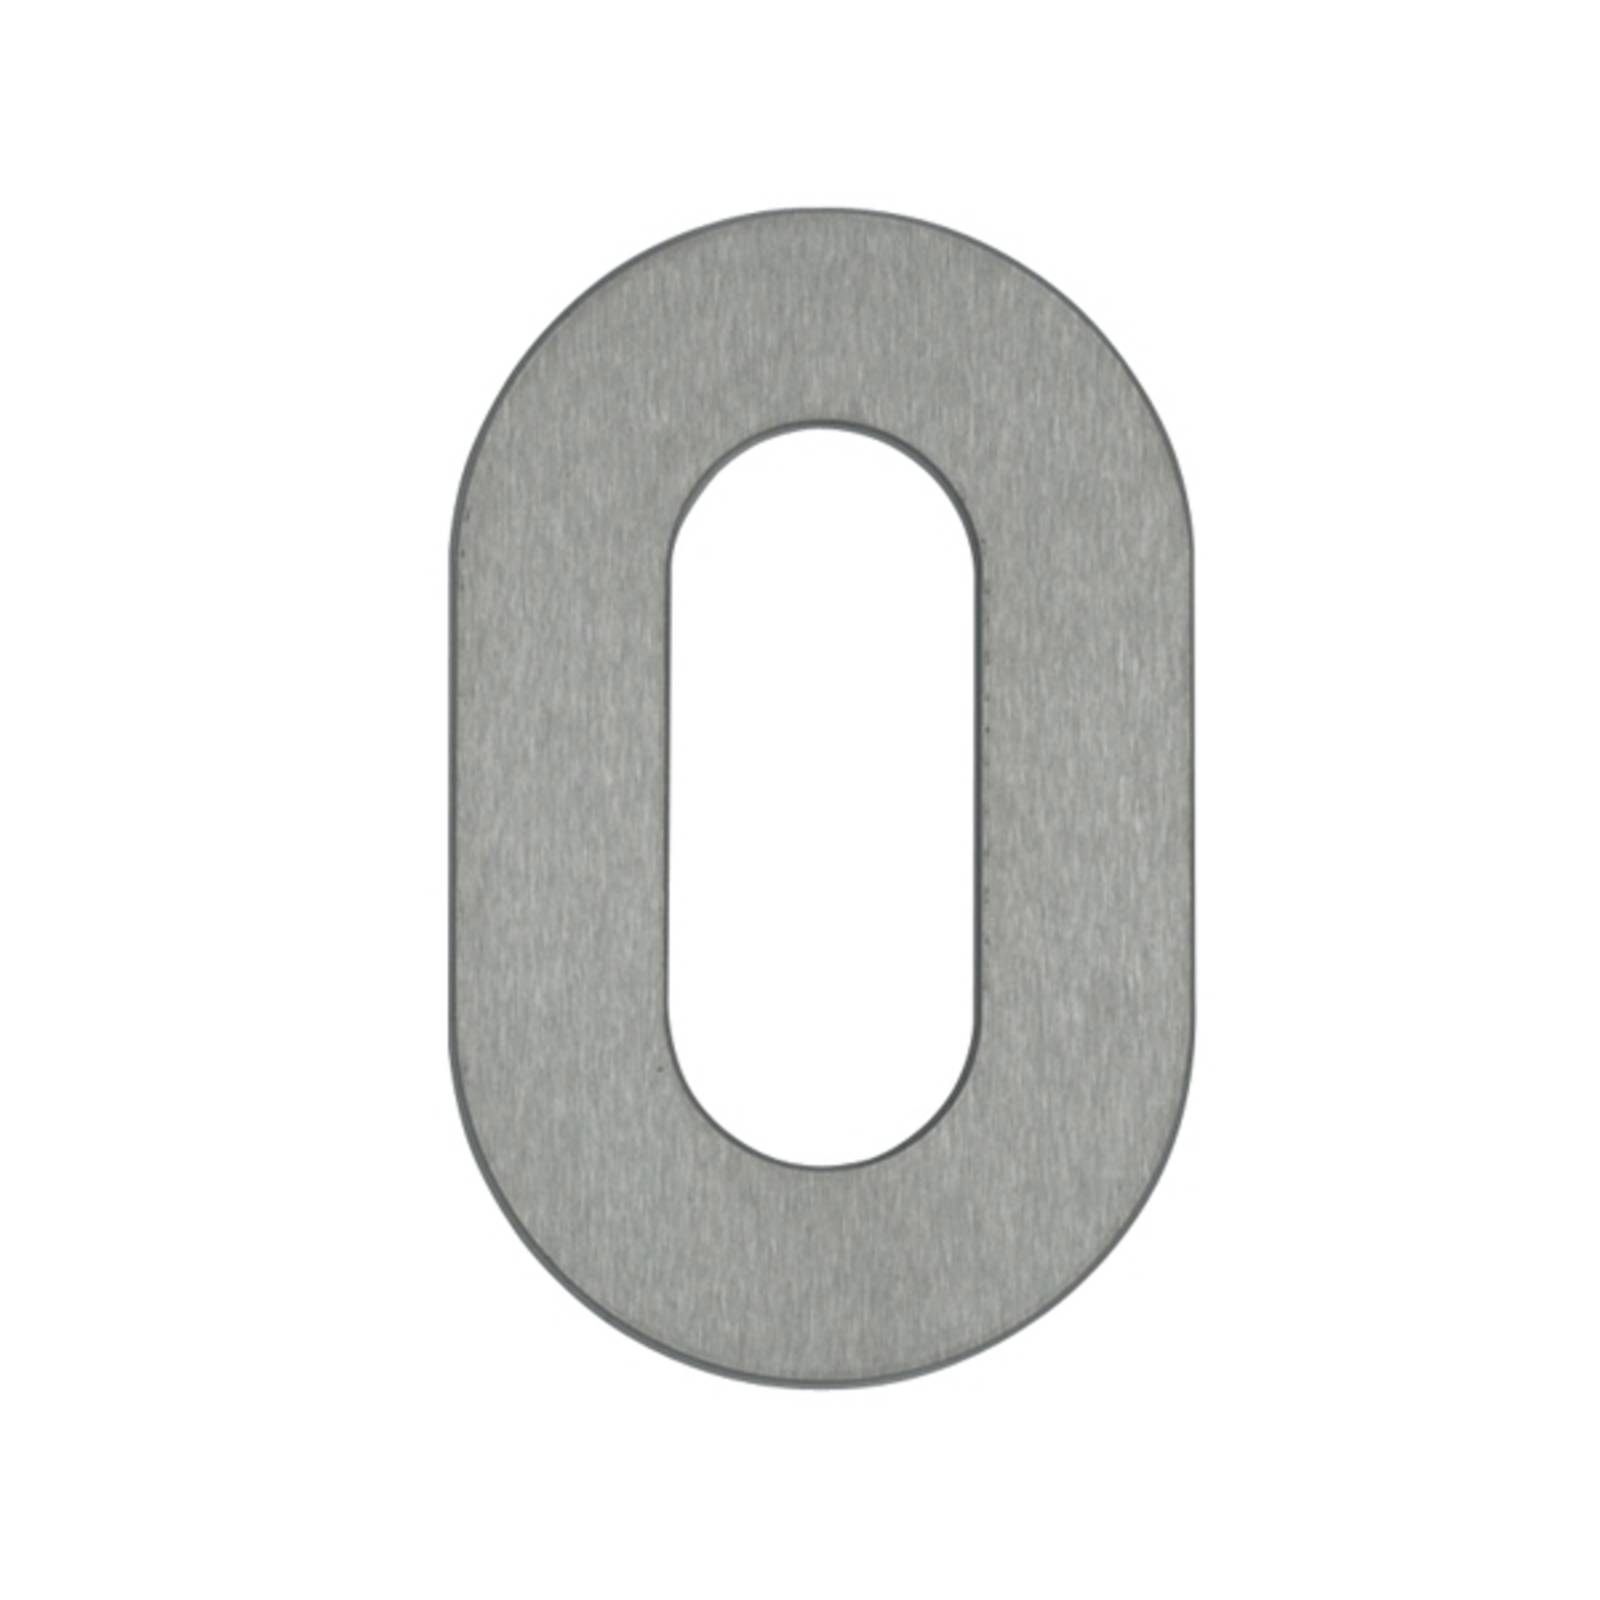 „0” házszám - rozsdamentes acél